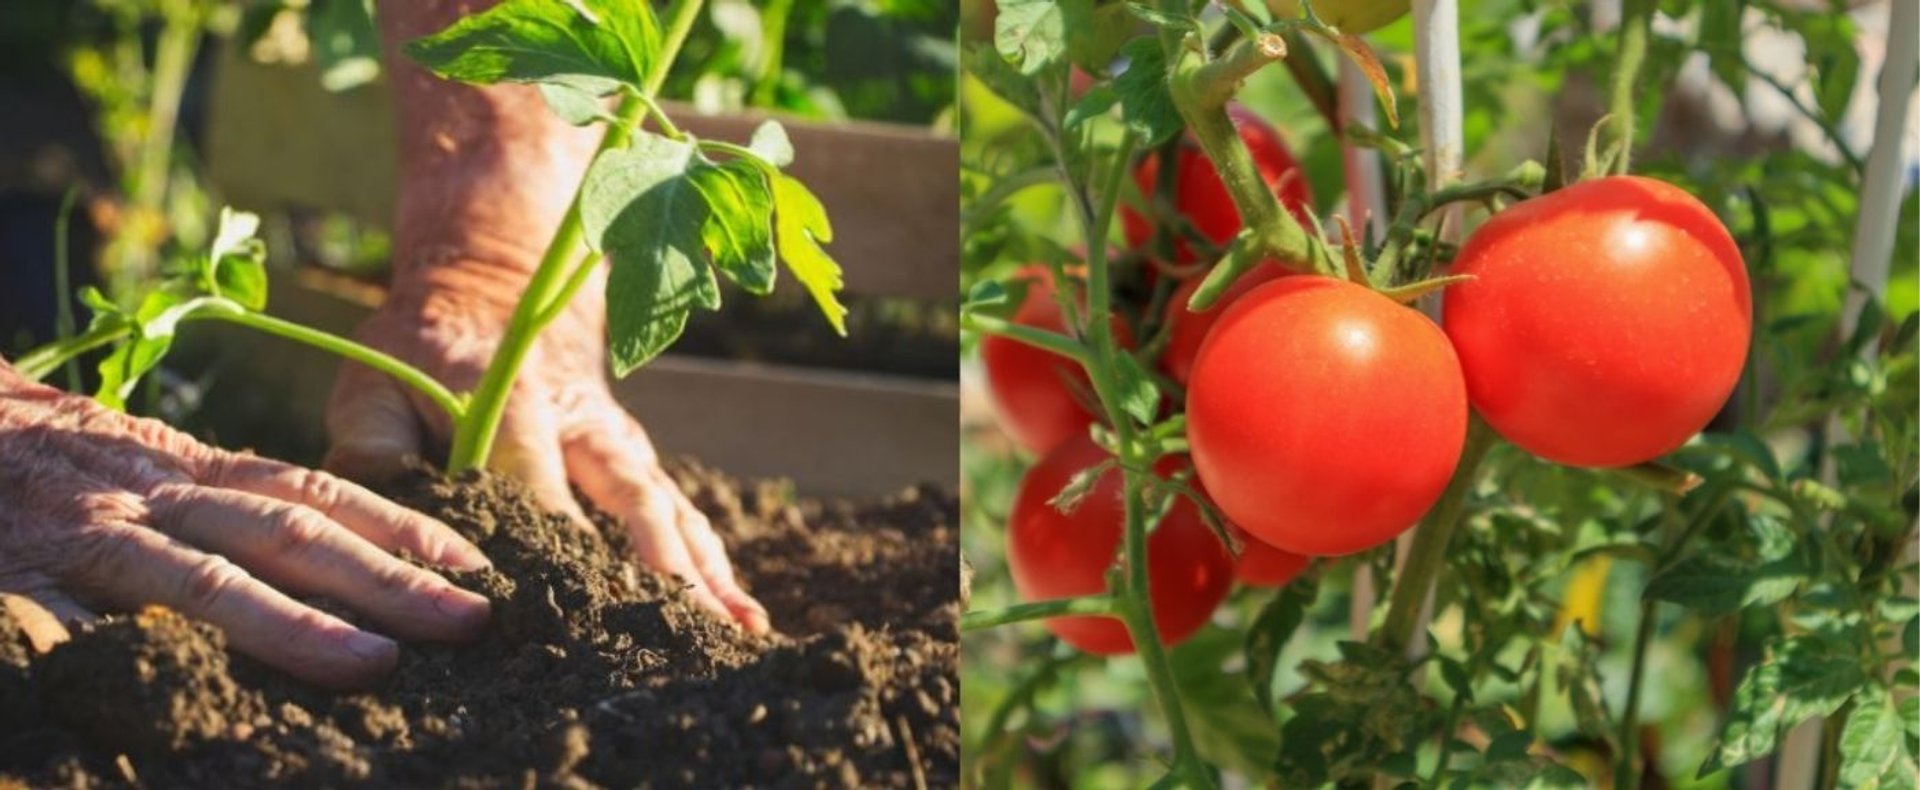 Pomidory wyrosną jeszcze większe